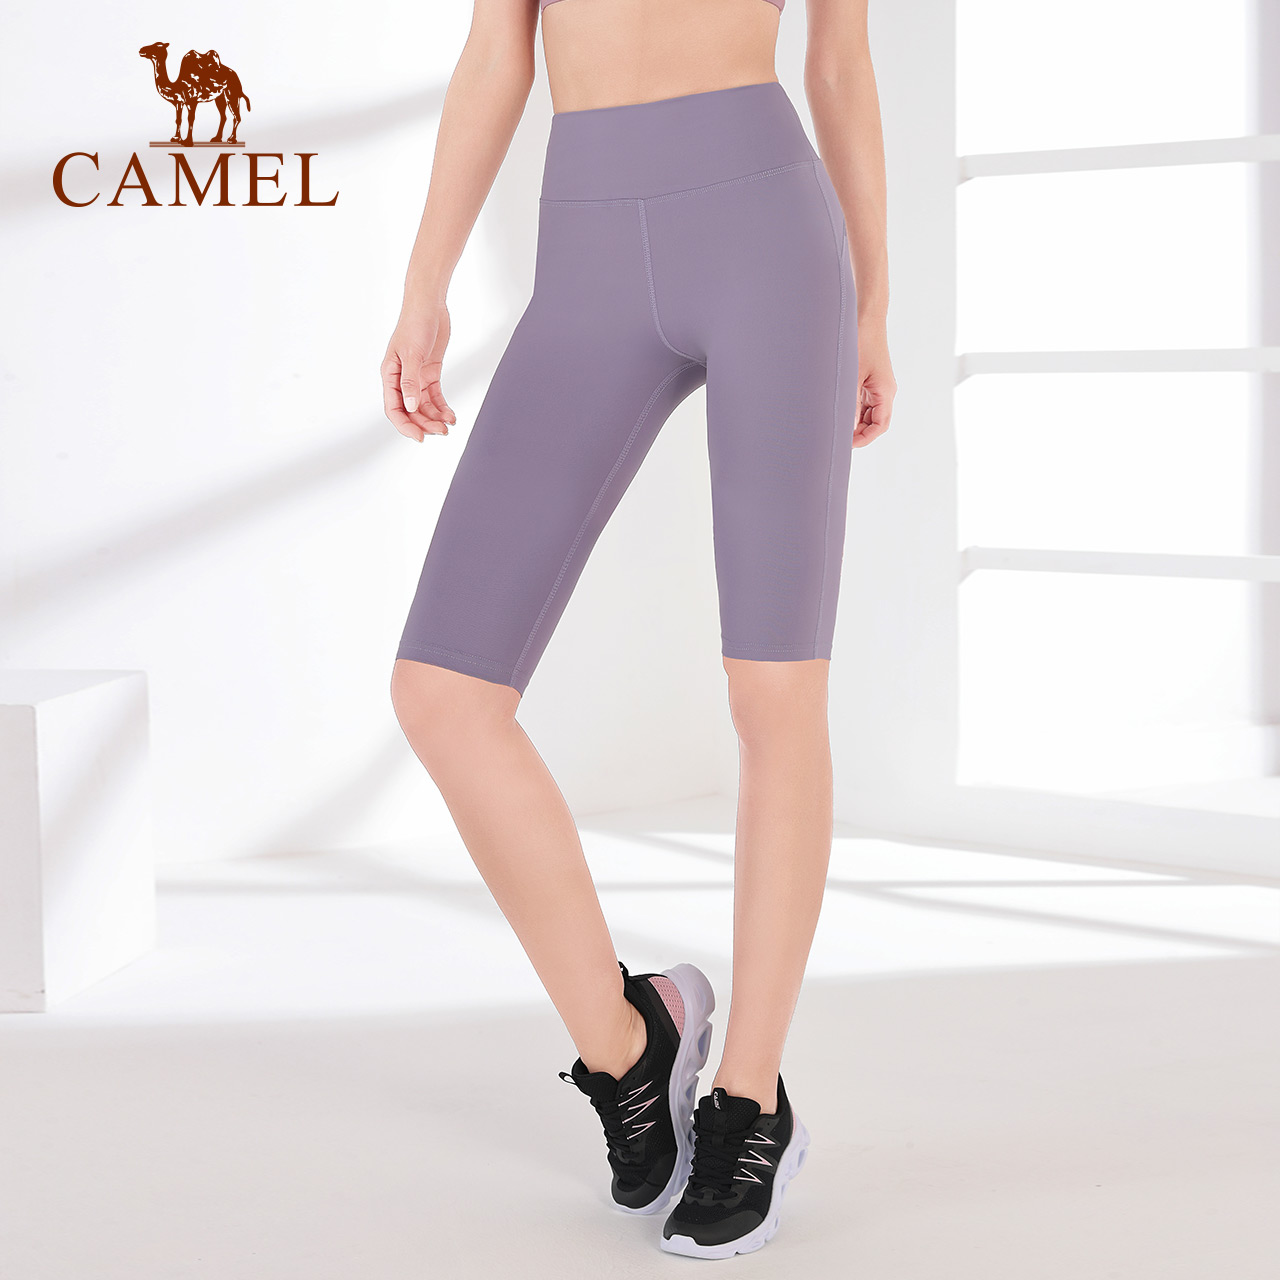 Quần thun CAMEL dài năm tấc mỏng ôm dáng phong cách đơn giản cho nữ